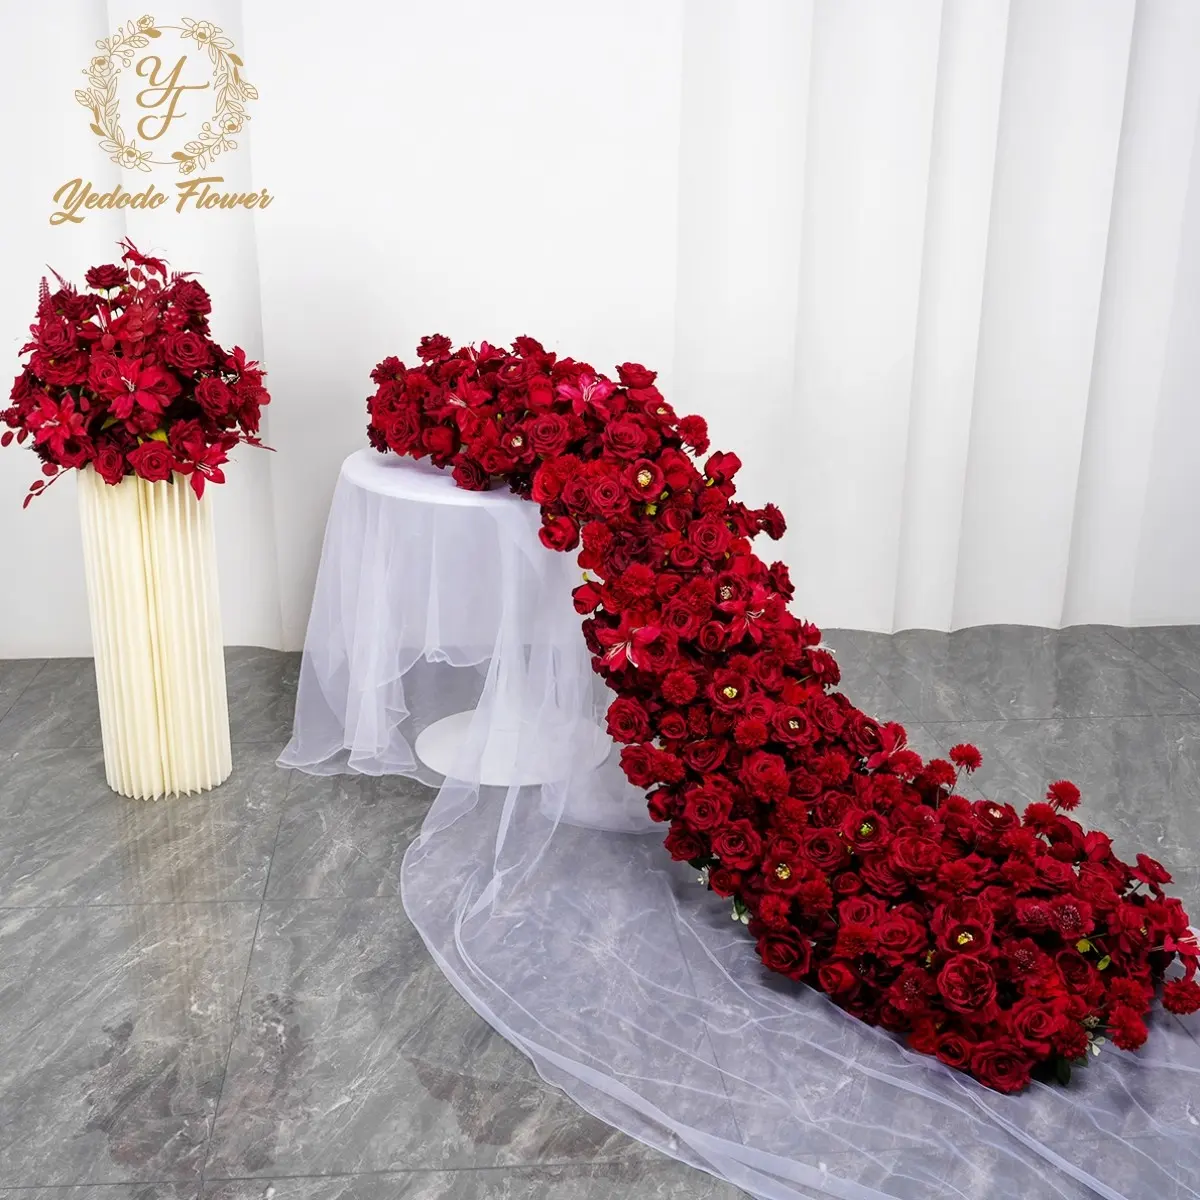 قطعة مركزية للطاولة بها زهور وردية حمراء من الحرير، باقة زهور صناعية لتزيين حفلات الزفاف